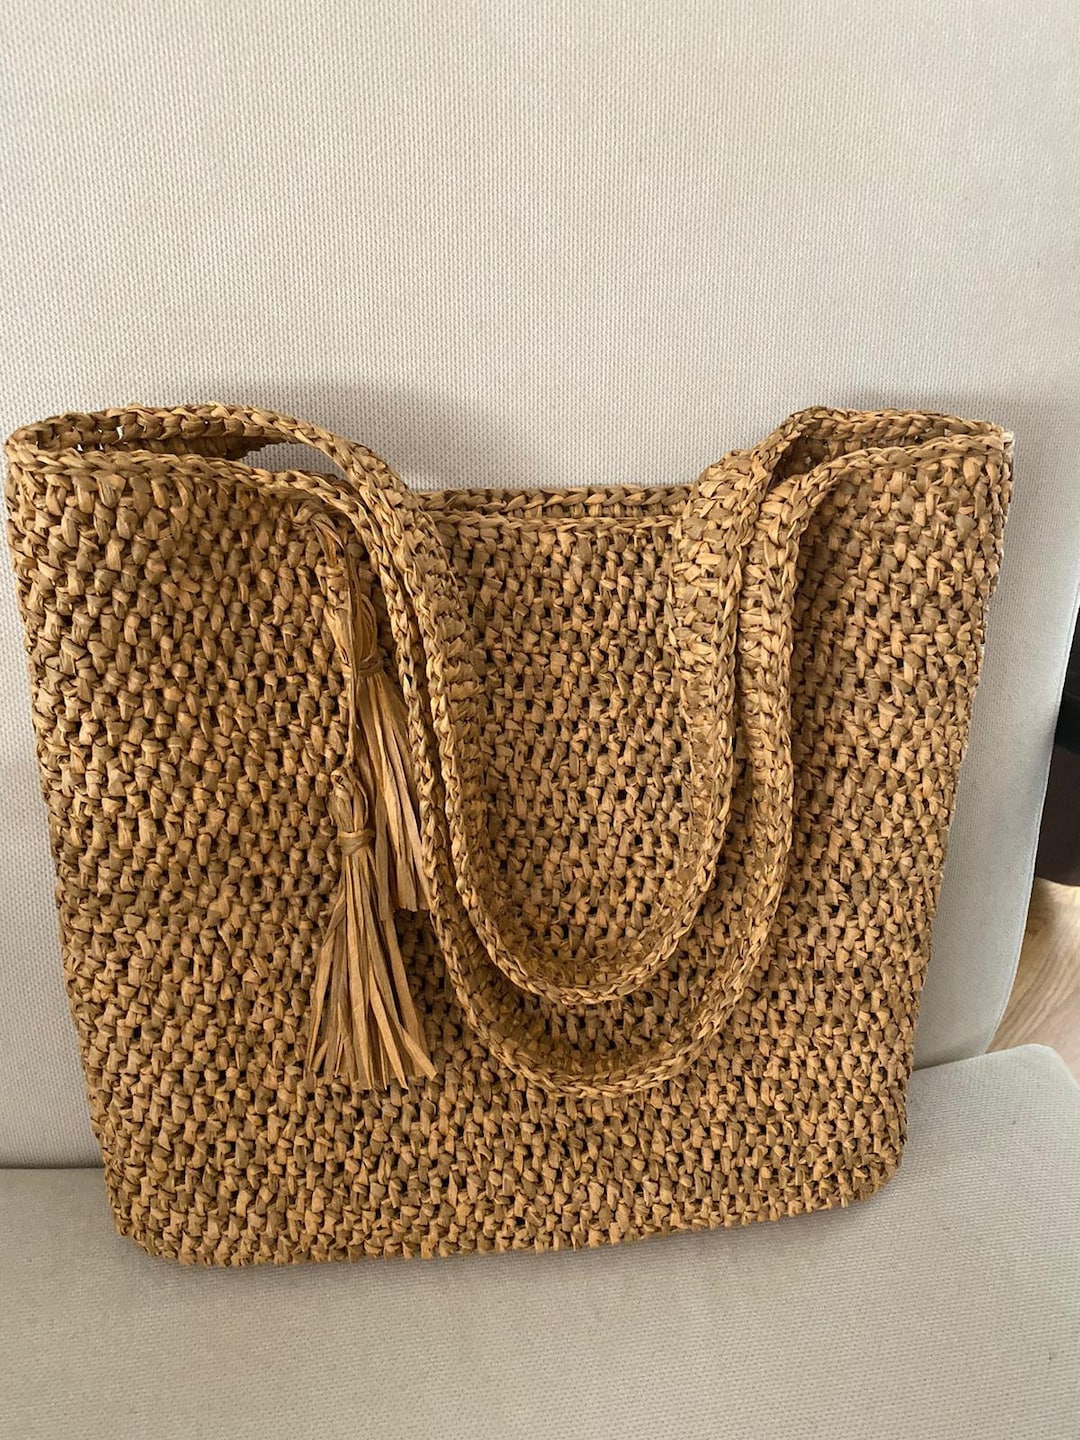 Tote Bag Bags Raphia Raffia Crochet Straw - Etsy